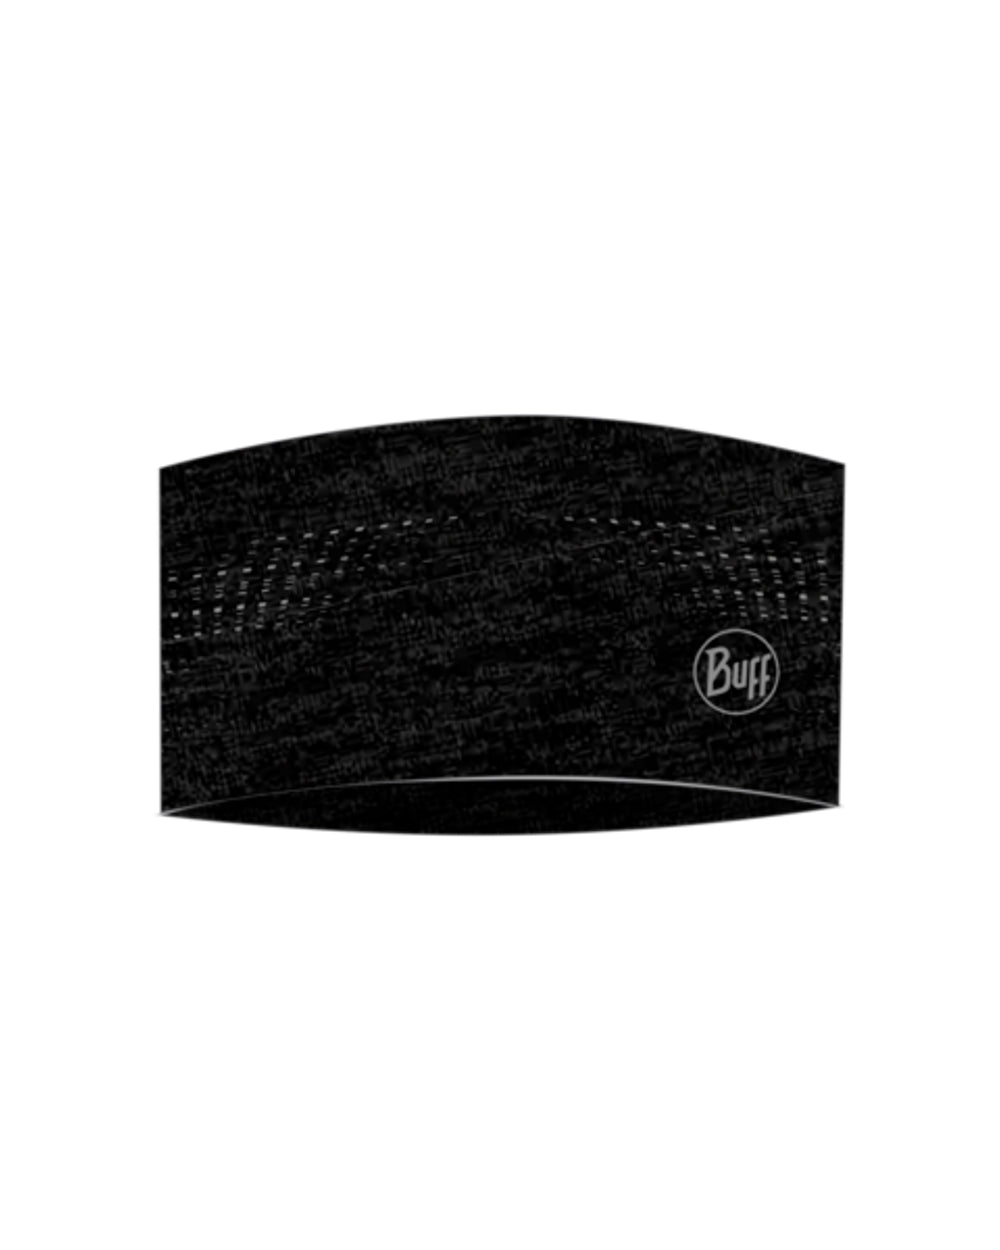 Buff DryFlx Headband in Black 